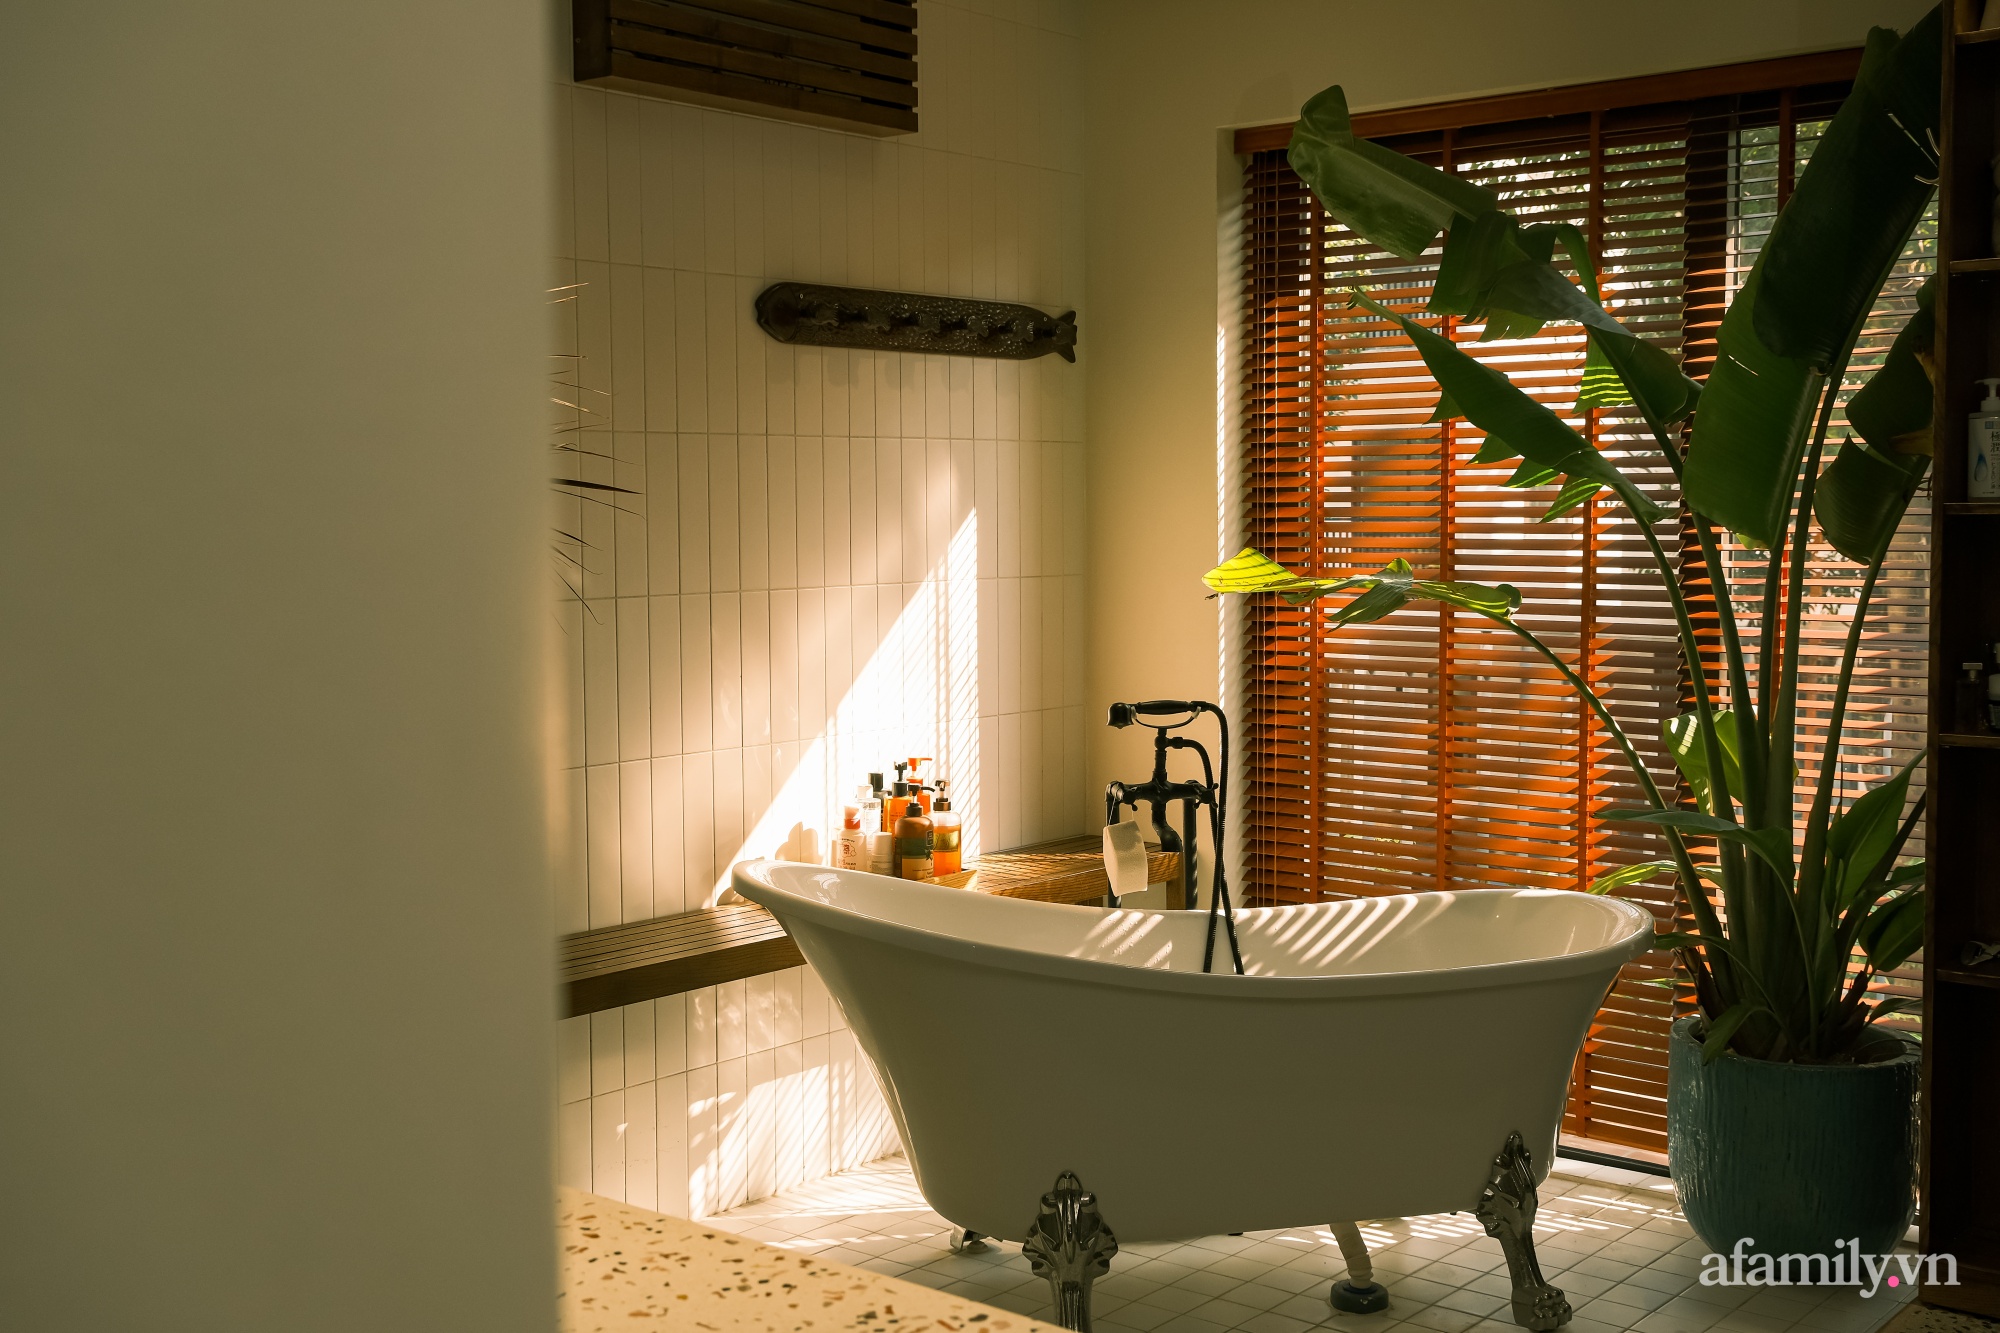 Phòng tắm kết hợp nơi thay đồ đẹp bình yên với sắc màu bản địa có chi phí 200 triệu đồng ở ngoại thành Hà Nội - Ảnh 2.